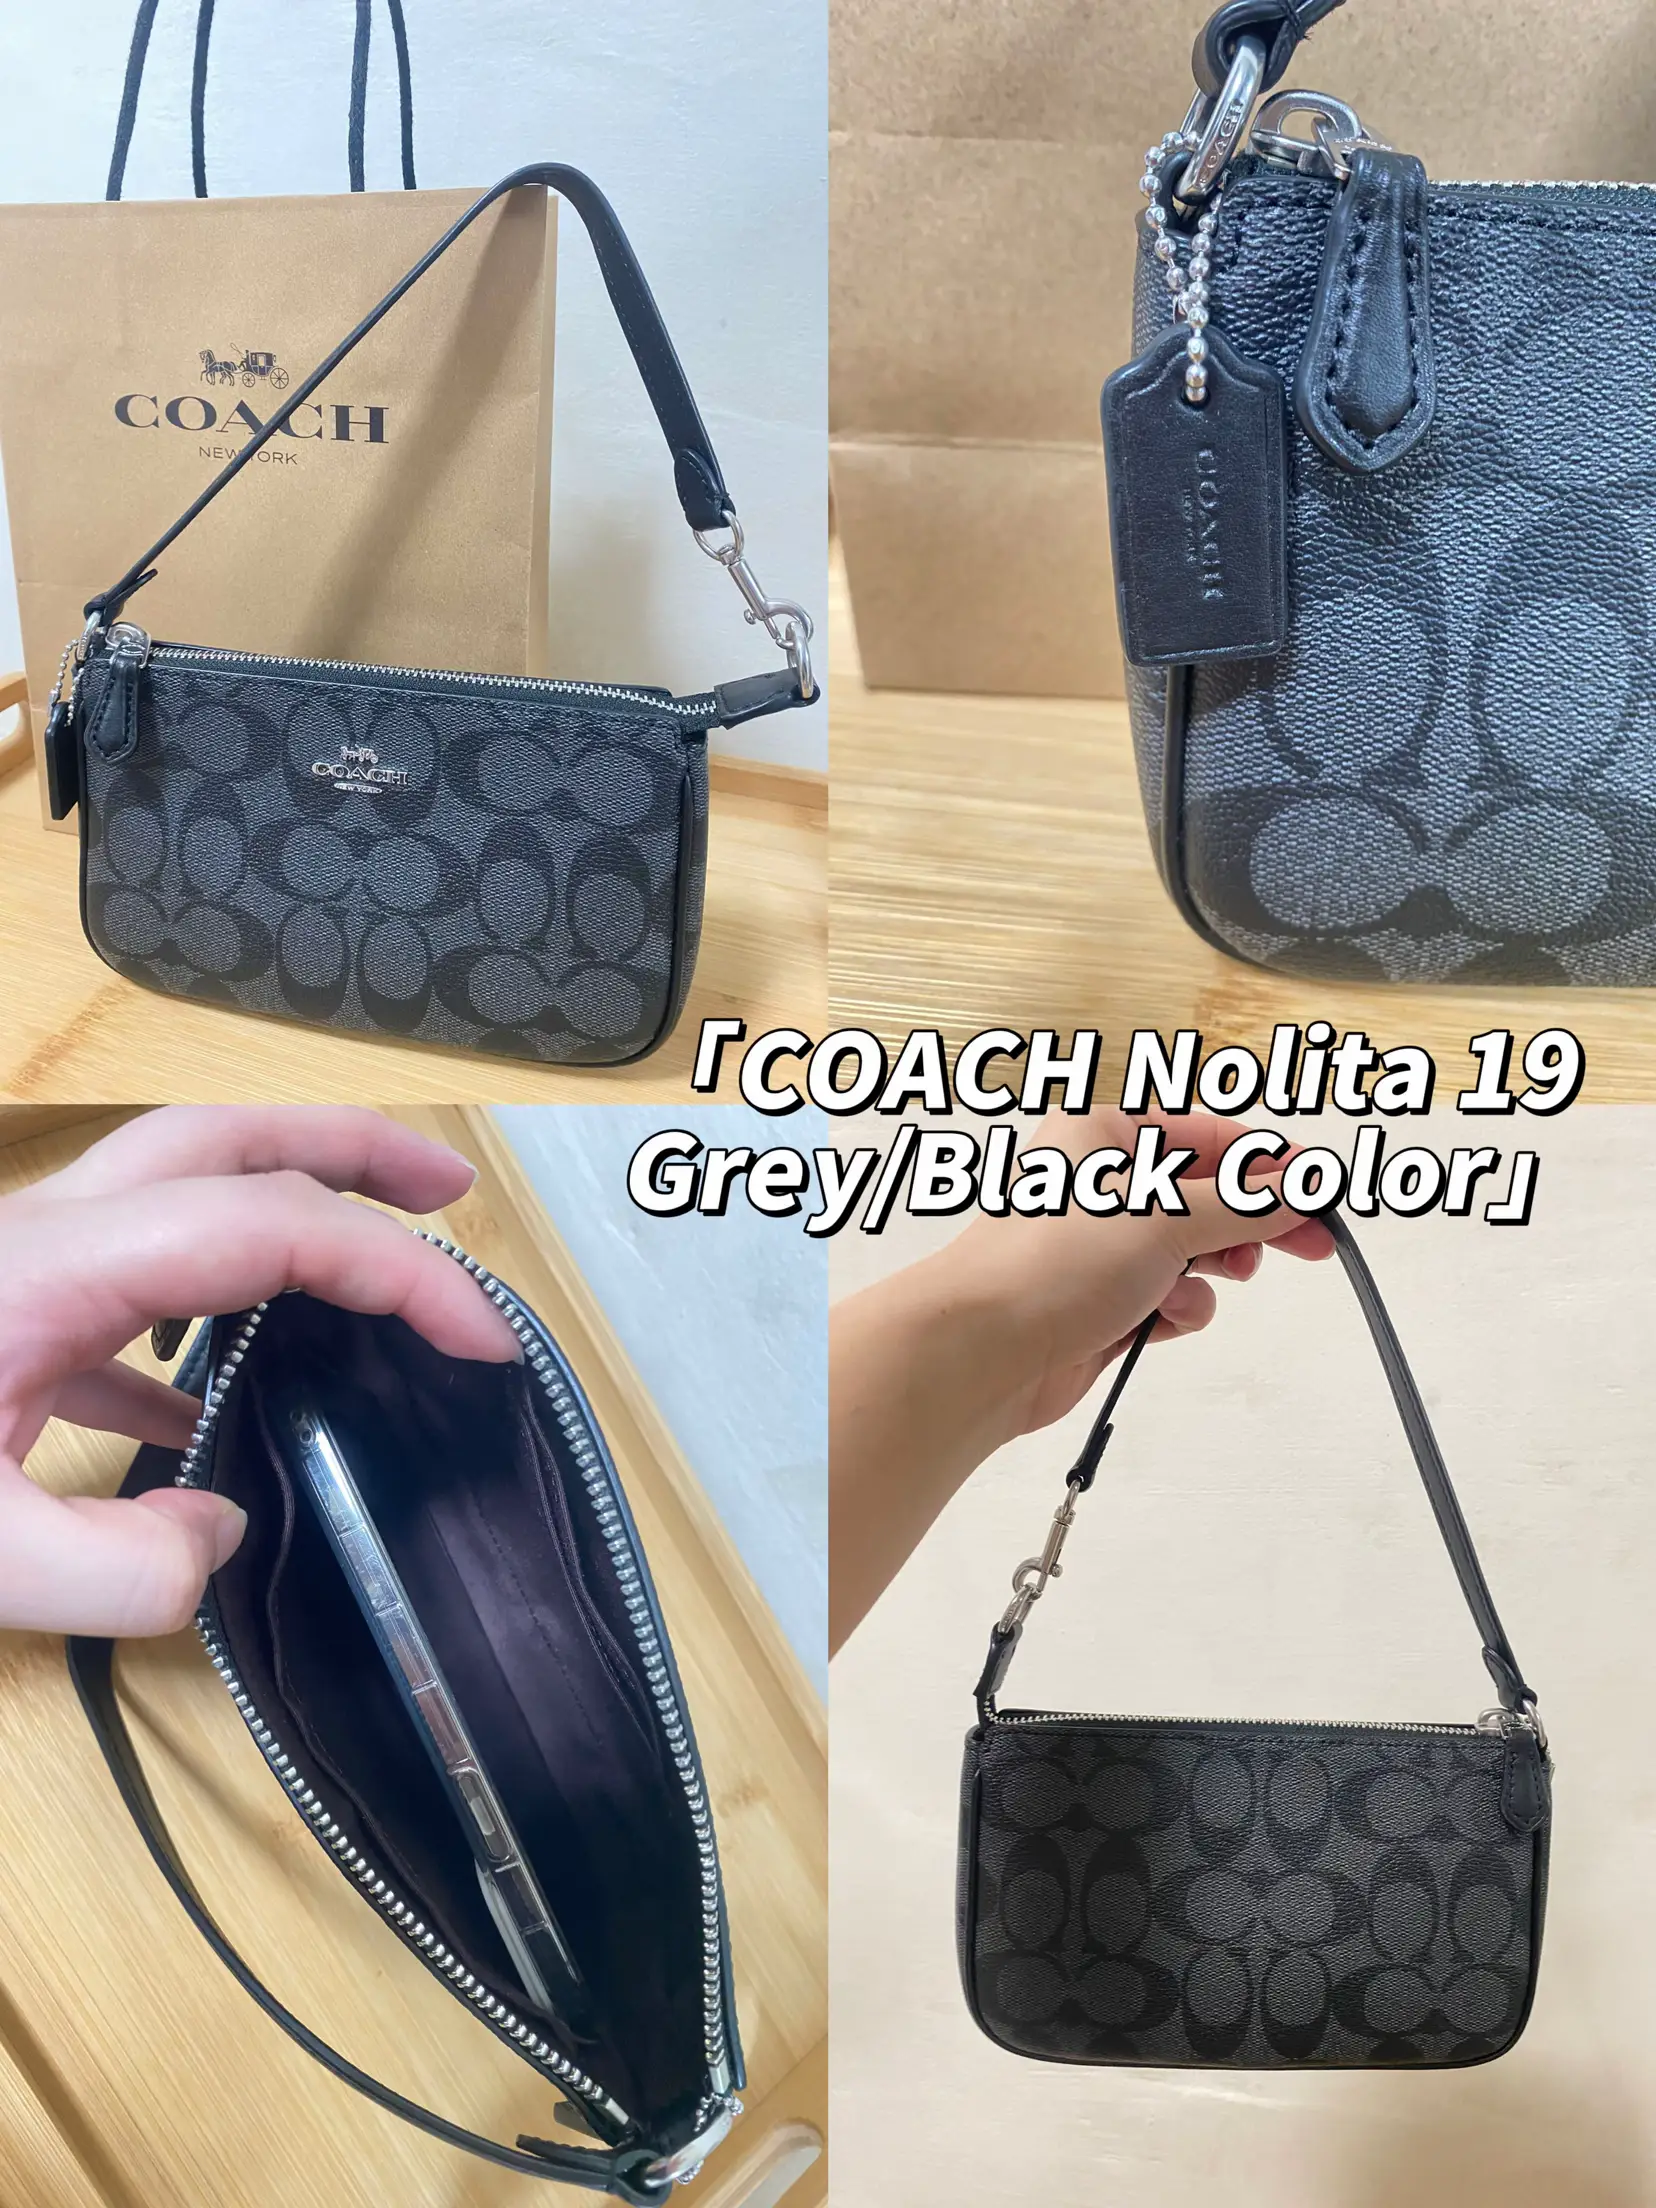 Coach Nolita 19 in Blocked Signature Canvas